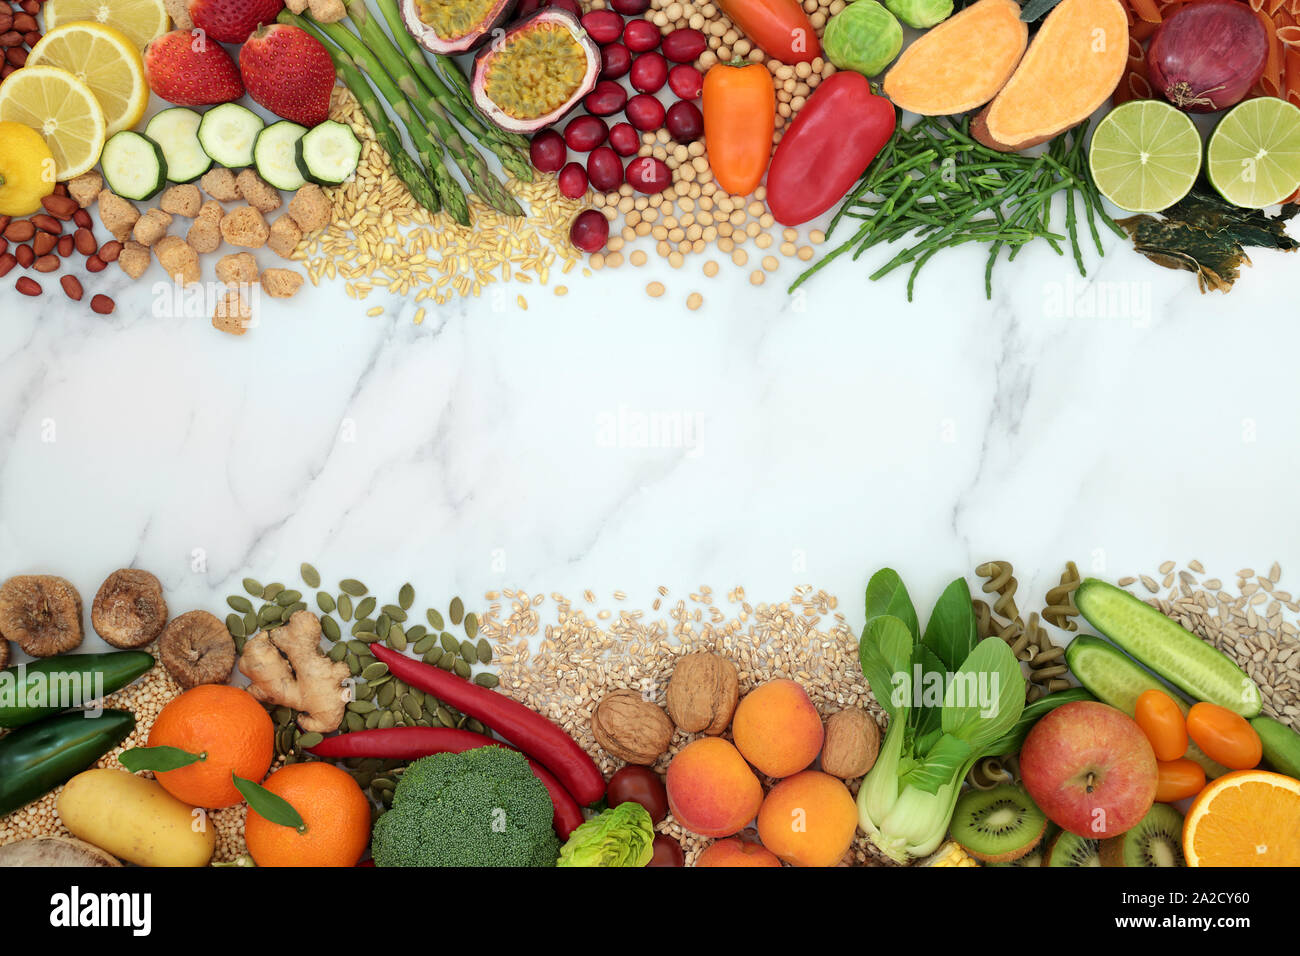 Bordure de l'arrière-plan de l'alimentation santé végétaliens avec une grande collection d'aliments. Riche en protéines, vitamines, minéraux, antioxydants, Fibres et oméga 3. Banque D'Images